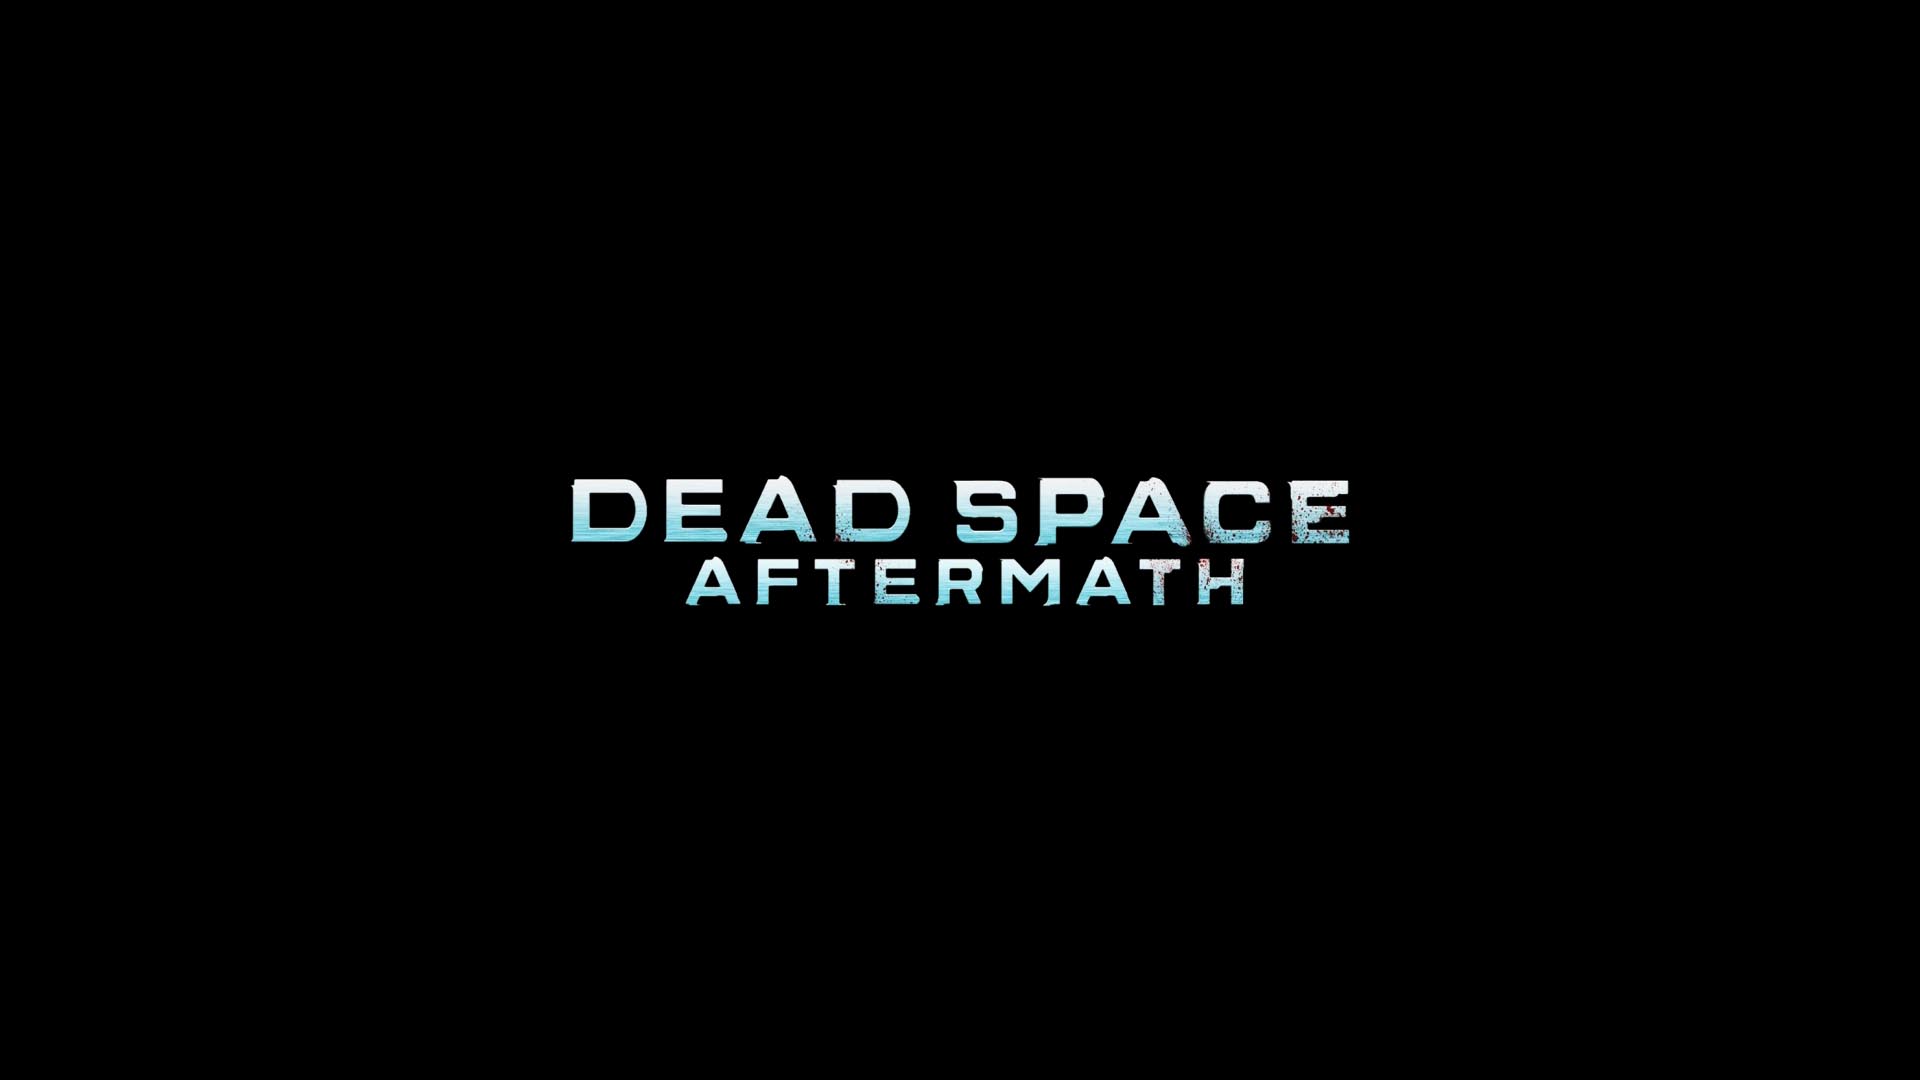 Descargar fondos de escritorio de Dead Space: Aftermath HD